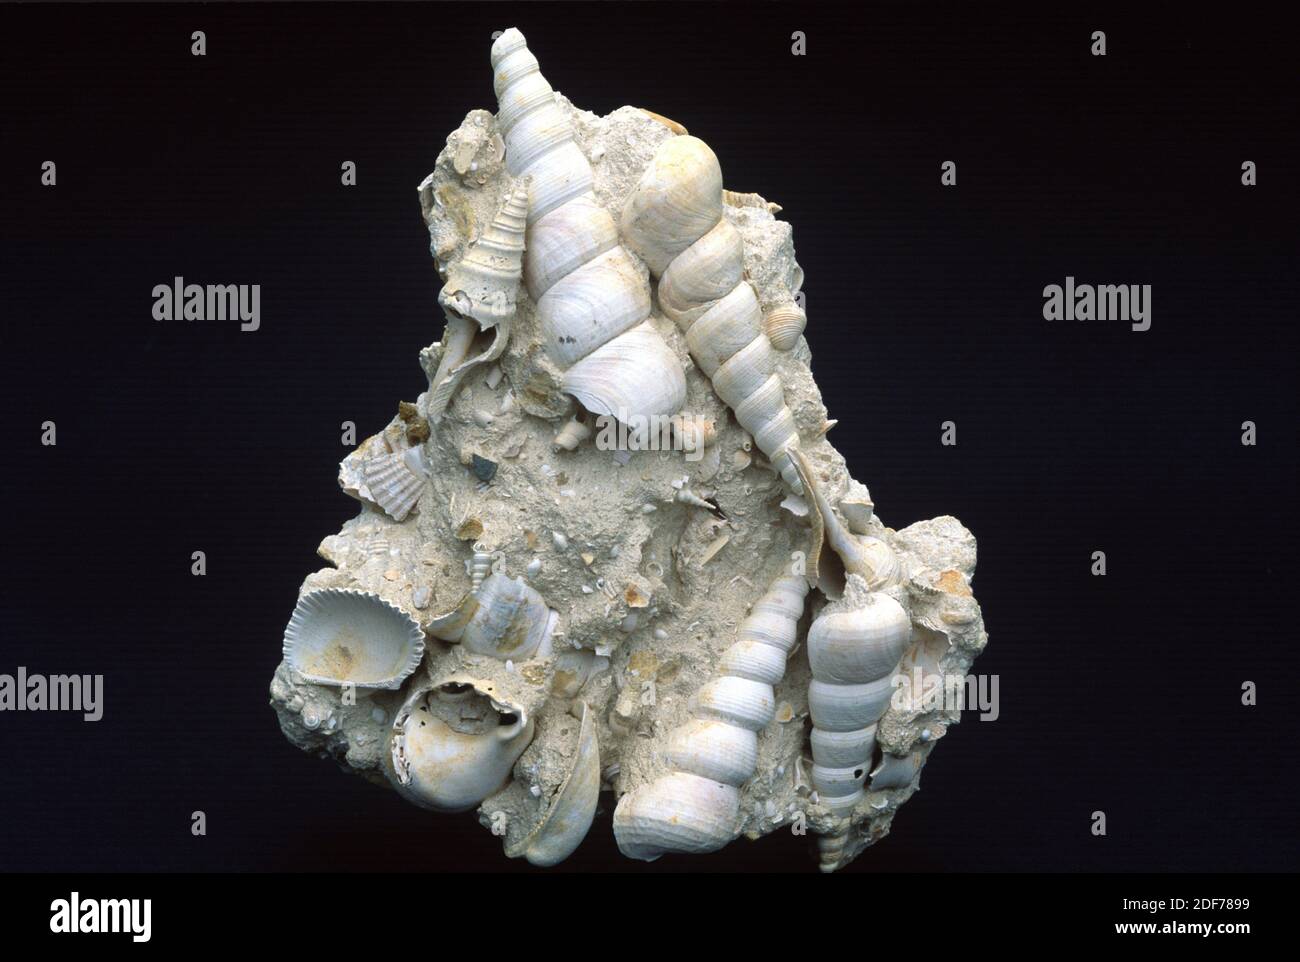 Fossils mollusca genus Turritella (Gastropoda) and Glycymeris (Bivalvia) from Miocene period. Sample. Stock Photo